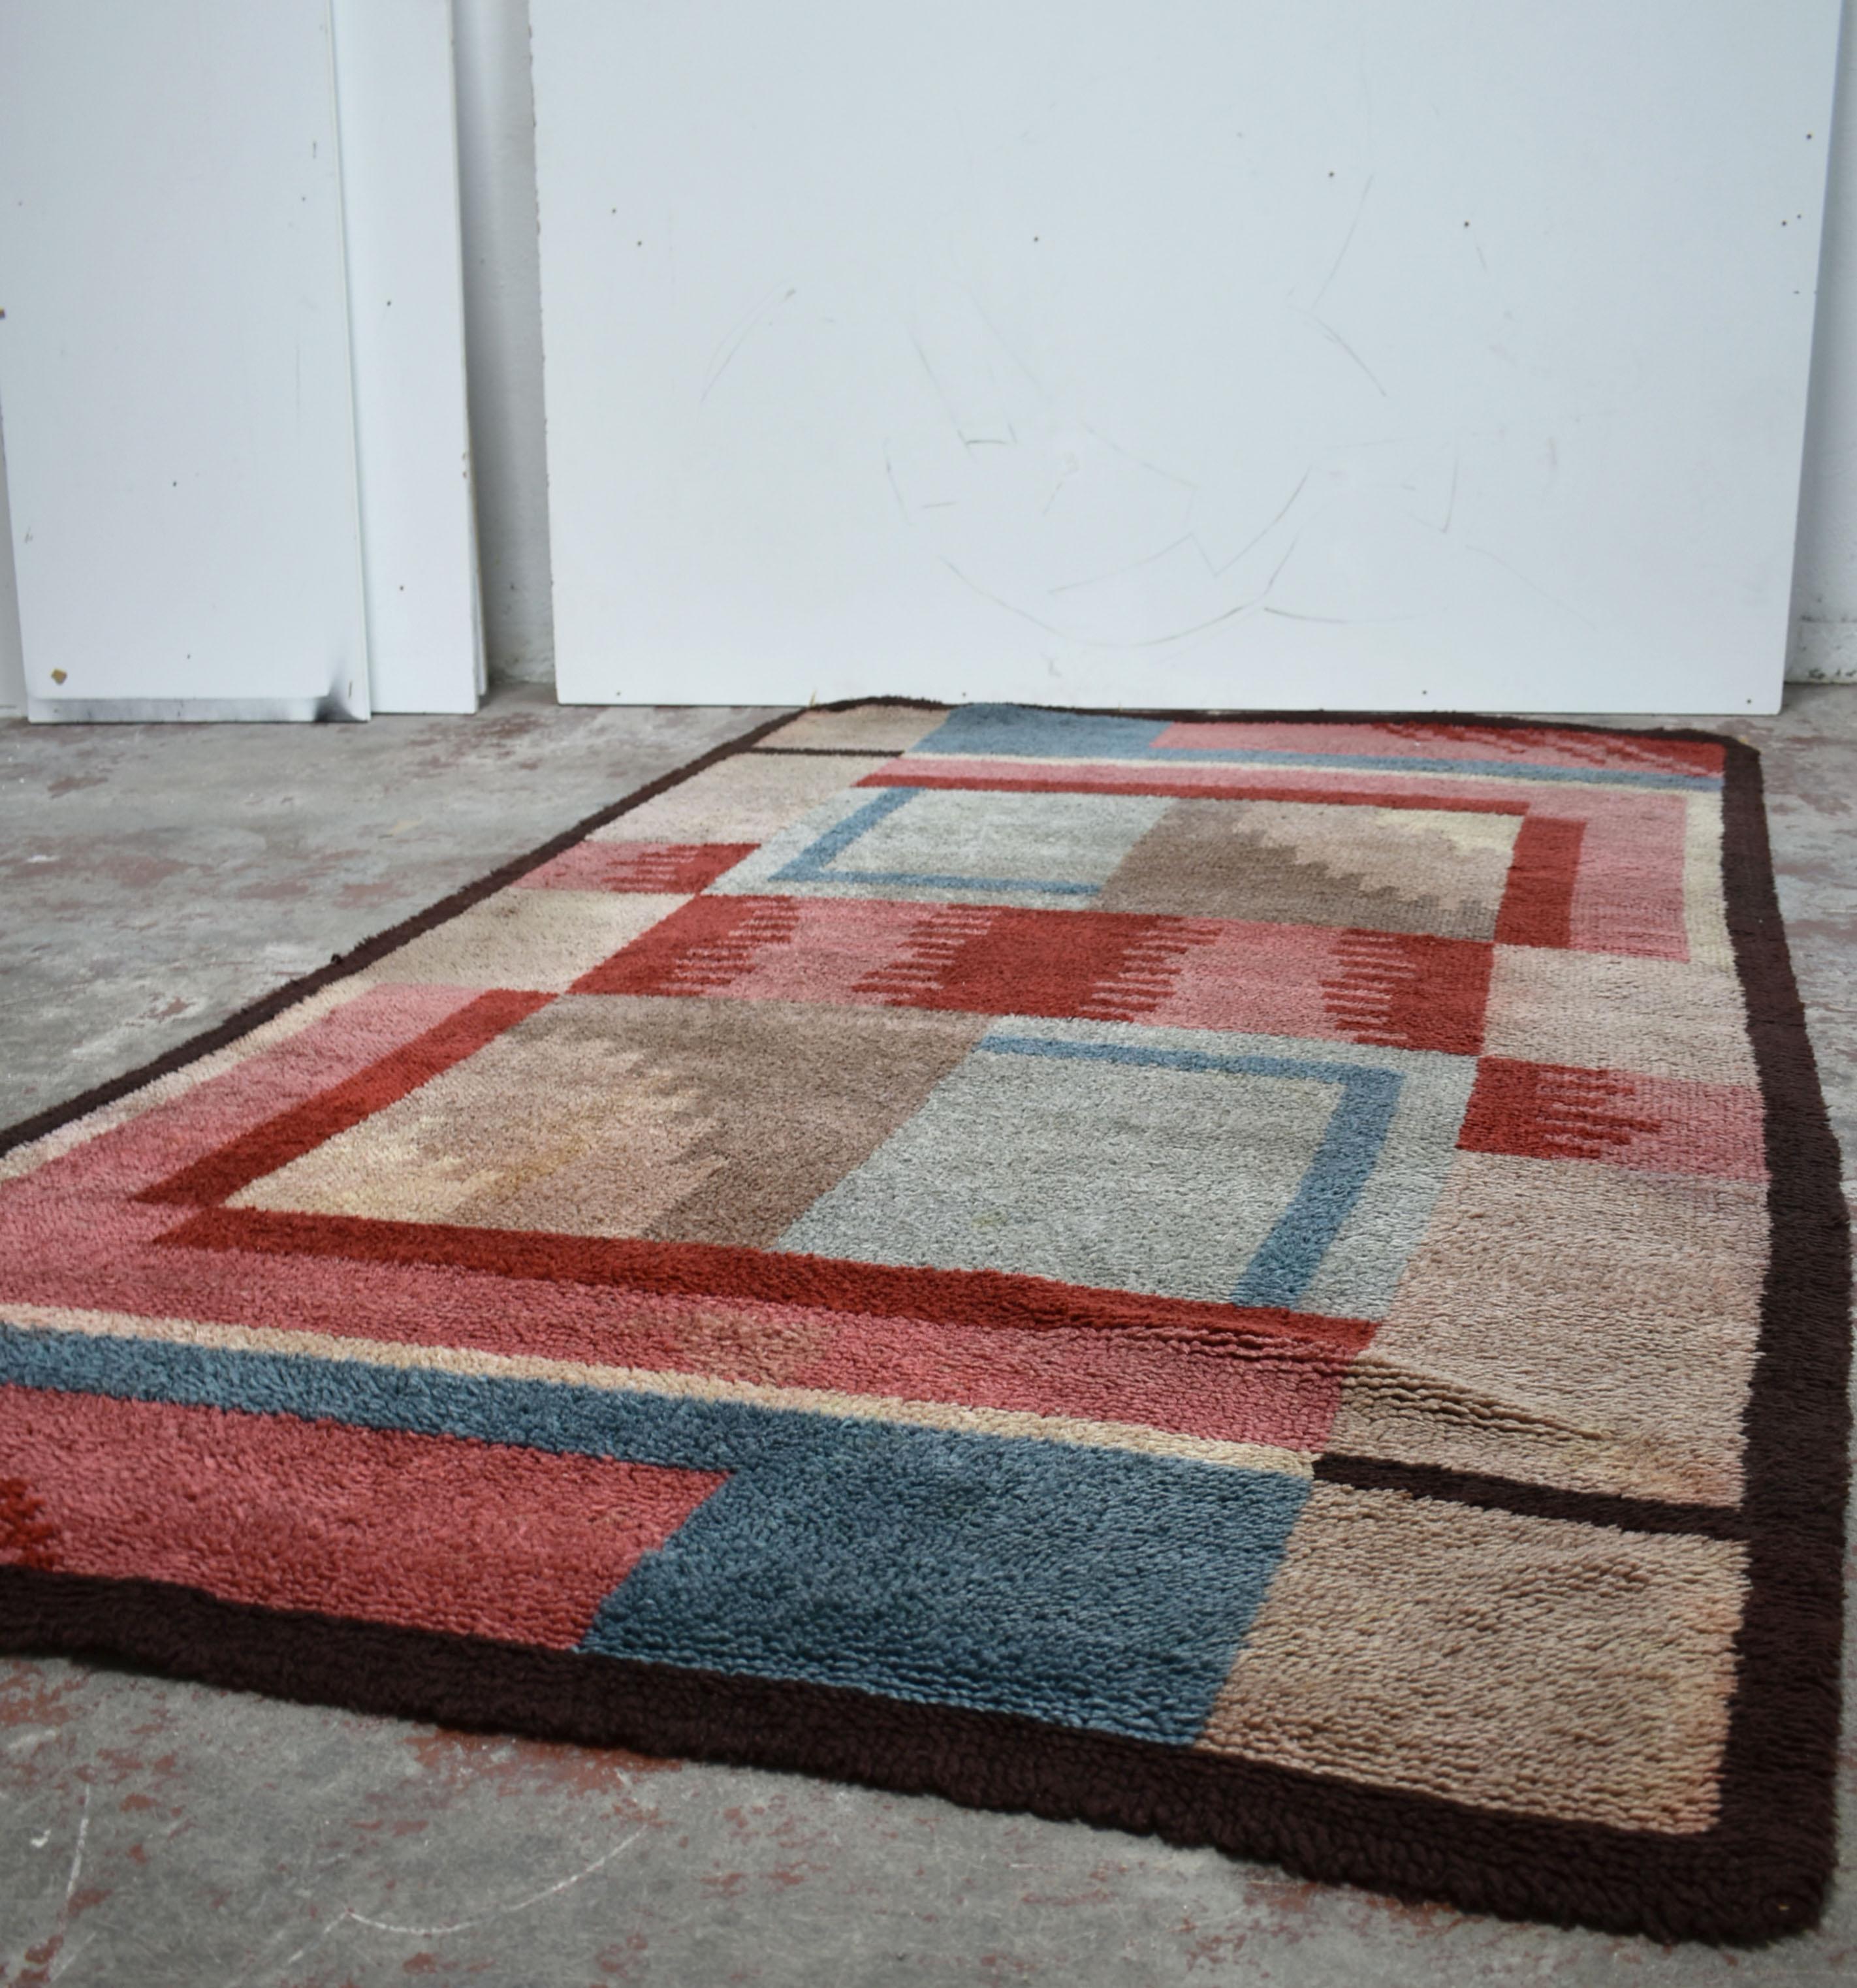 Atemberaubender französischer Art-Déco-Teppich, handgewebt aus Wolle

Dieser in den 1930er Jahren handgefertigte Teppich weist ein geometrisches Muster im De Stijl/Bauhaus-Stil auf. Die Farbpalette besteht aus Rot-, Blau- und Hellbrauntönen, die